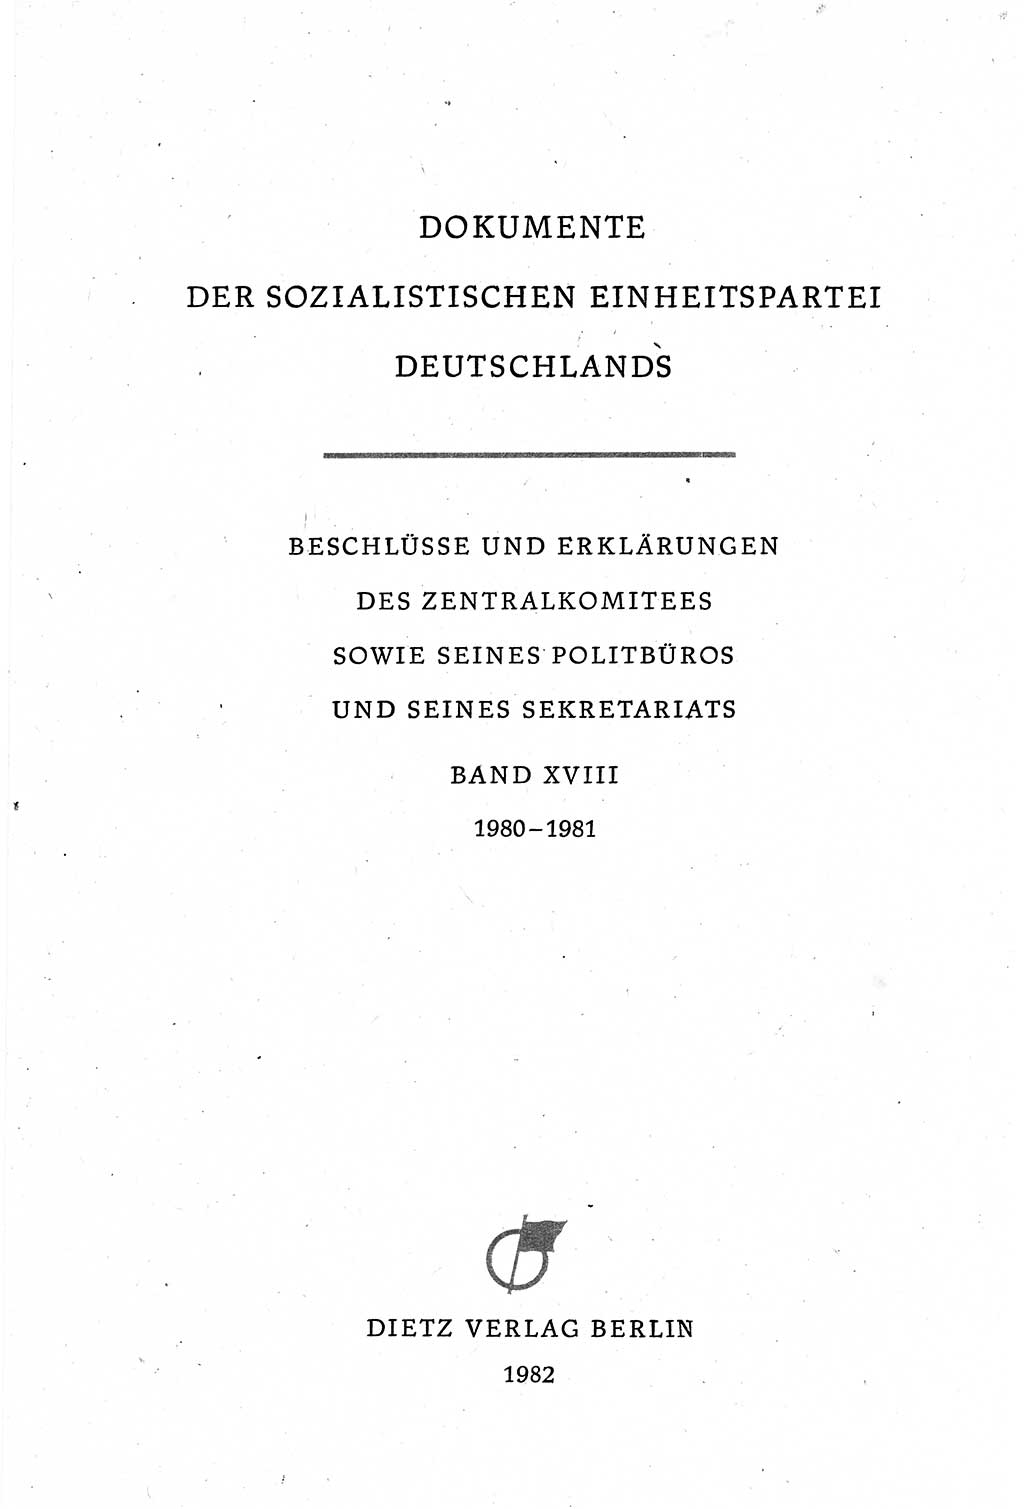 Dokumente der Sozialistischen Einheitspartei Deutschlands (SED) [Deutsche Demokratische Republik (DDR)] 1980-1981, Seite 3 (Dok. SED DDR 1980-1981, S. 3)